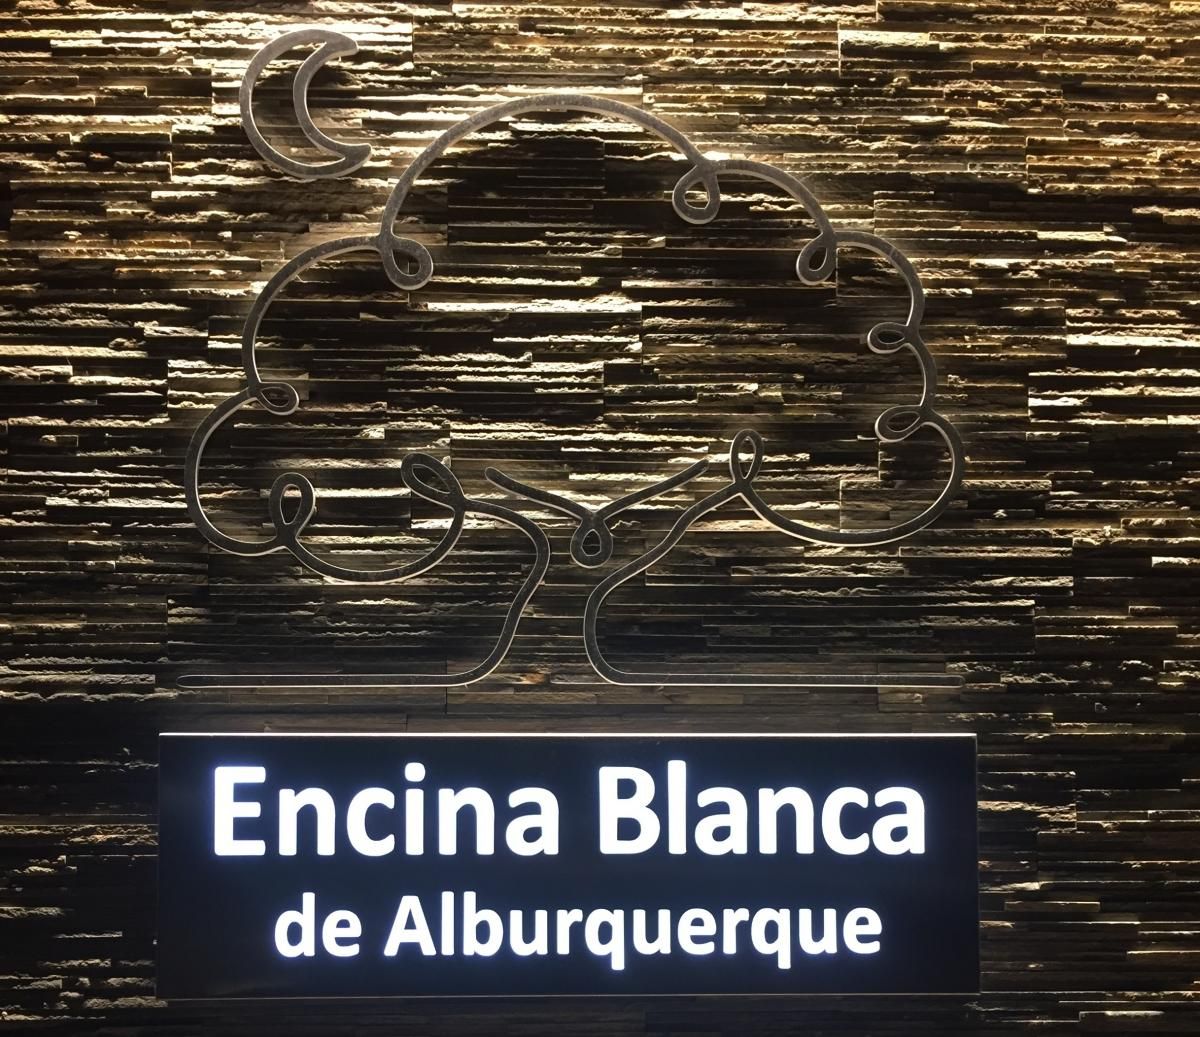 Restaurante Encina Blanca de Alburquerque